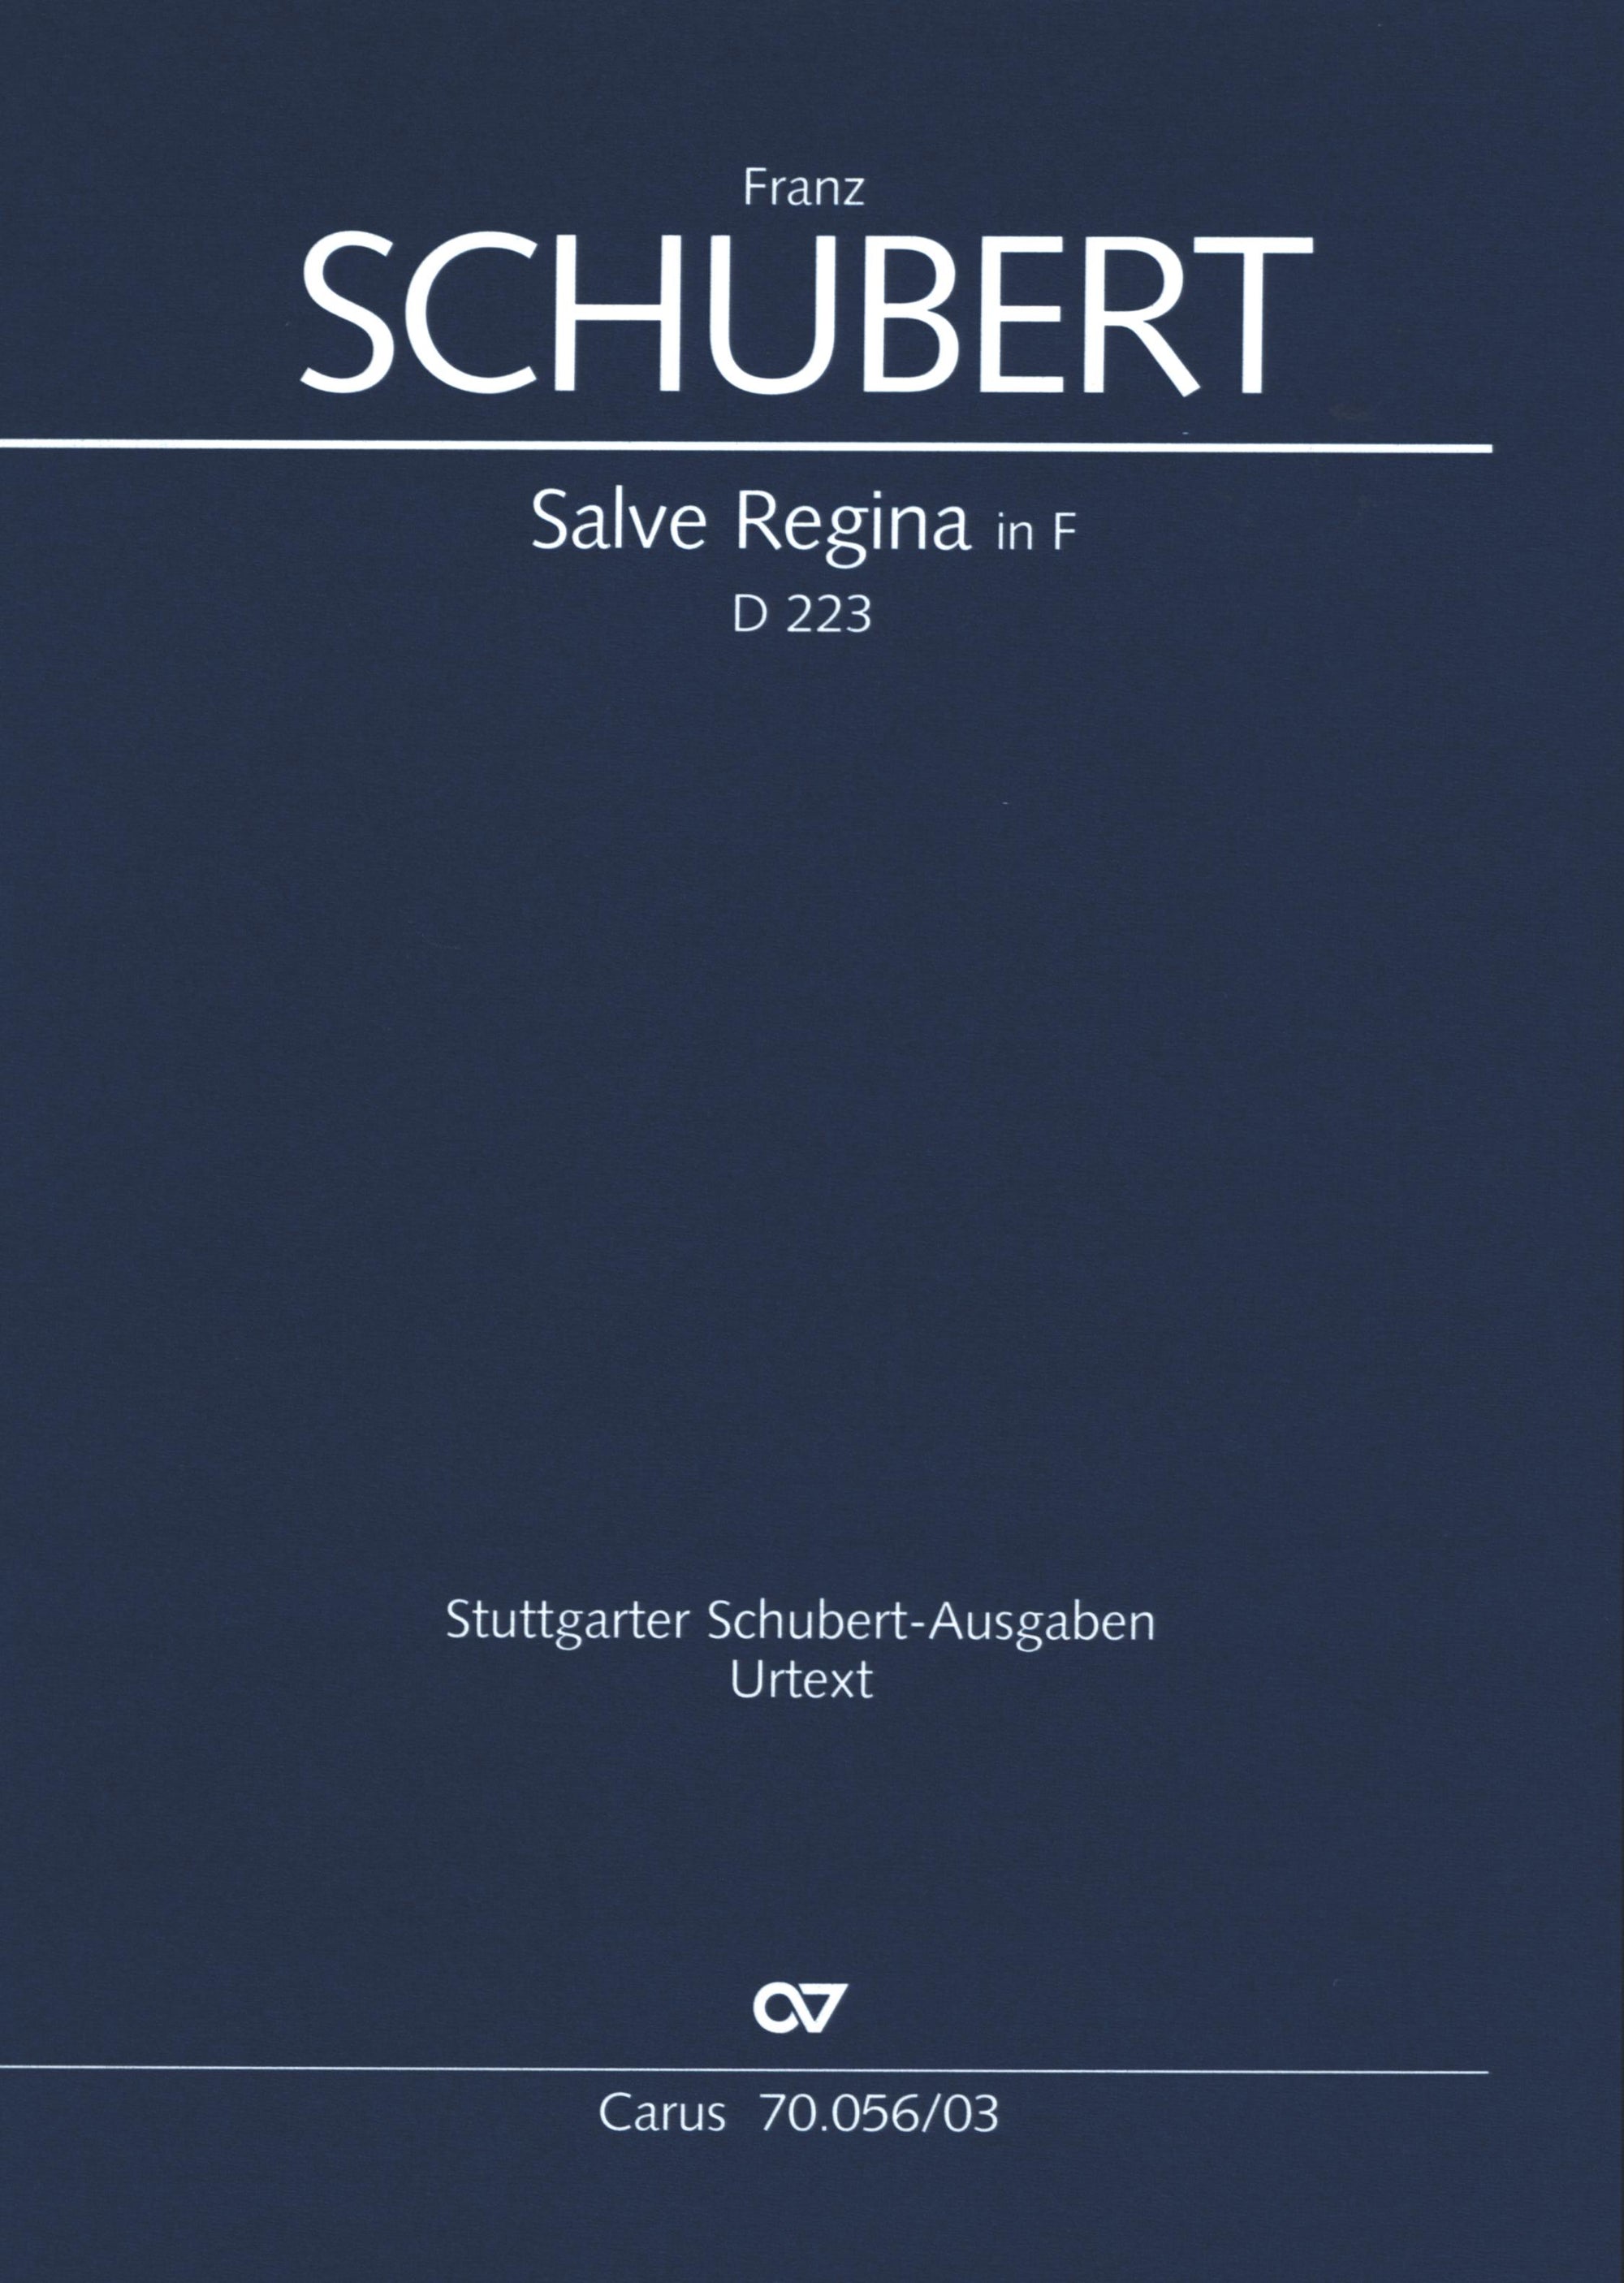 Schubert: Salve Regina in F Major, D. 223